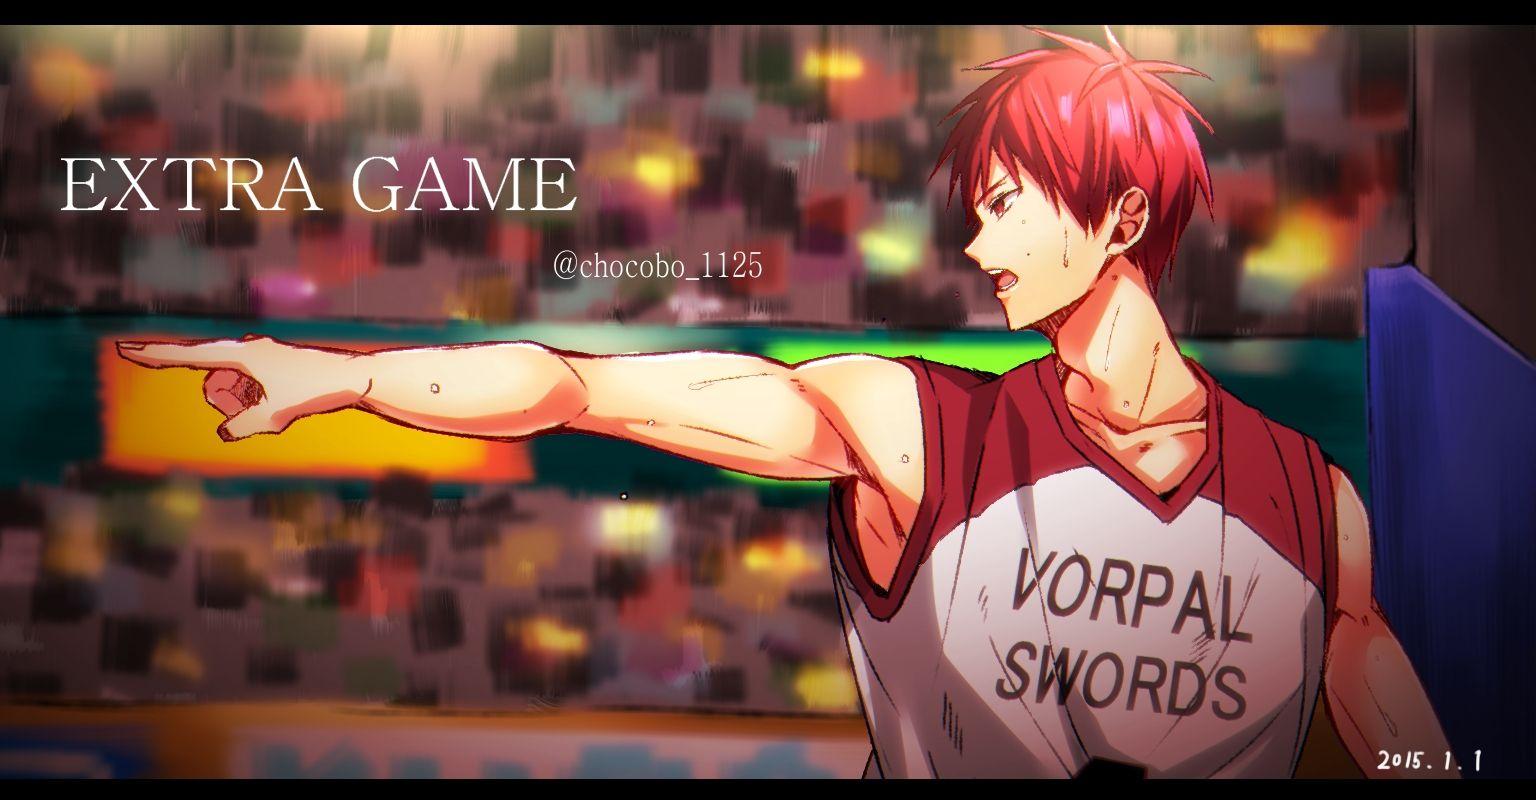 Basketball Uniform (Vorpal Swords) Anime Image Board